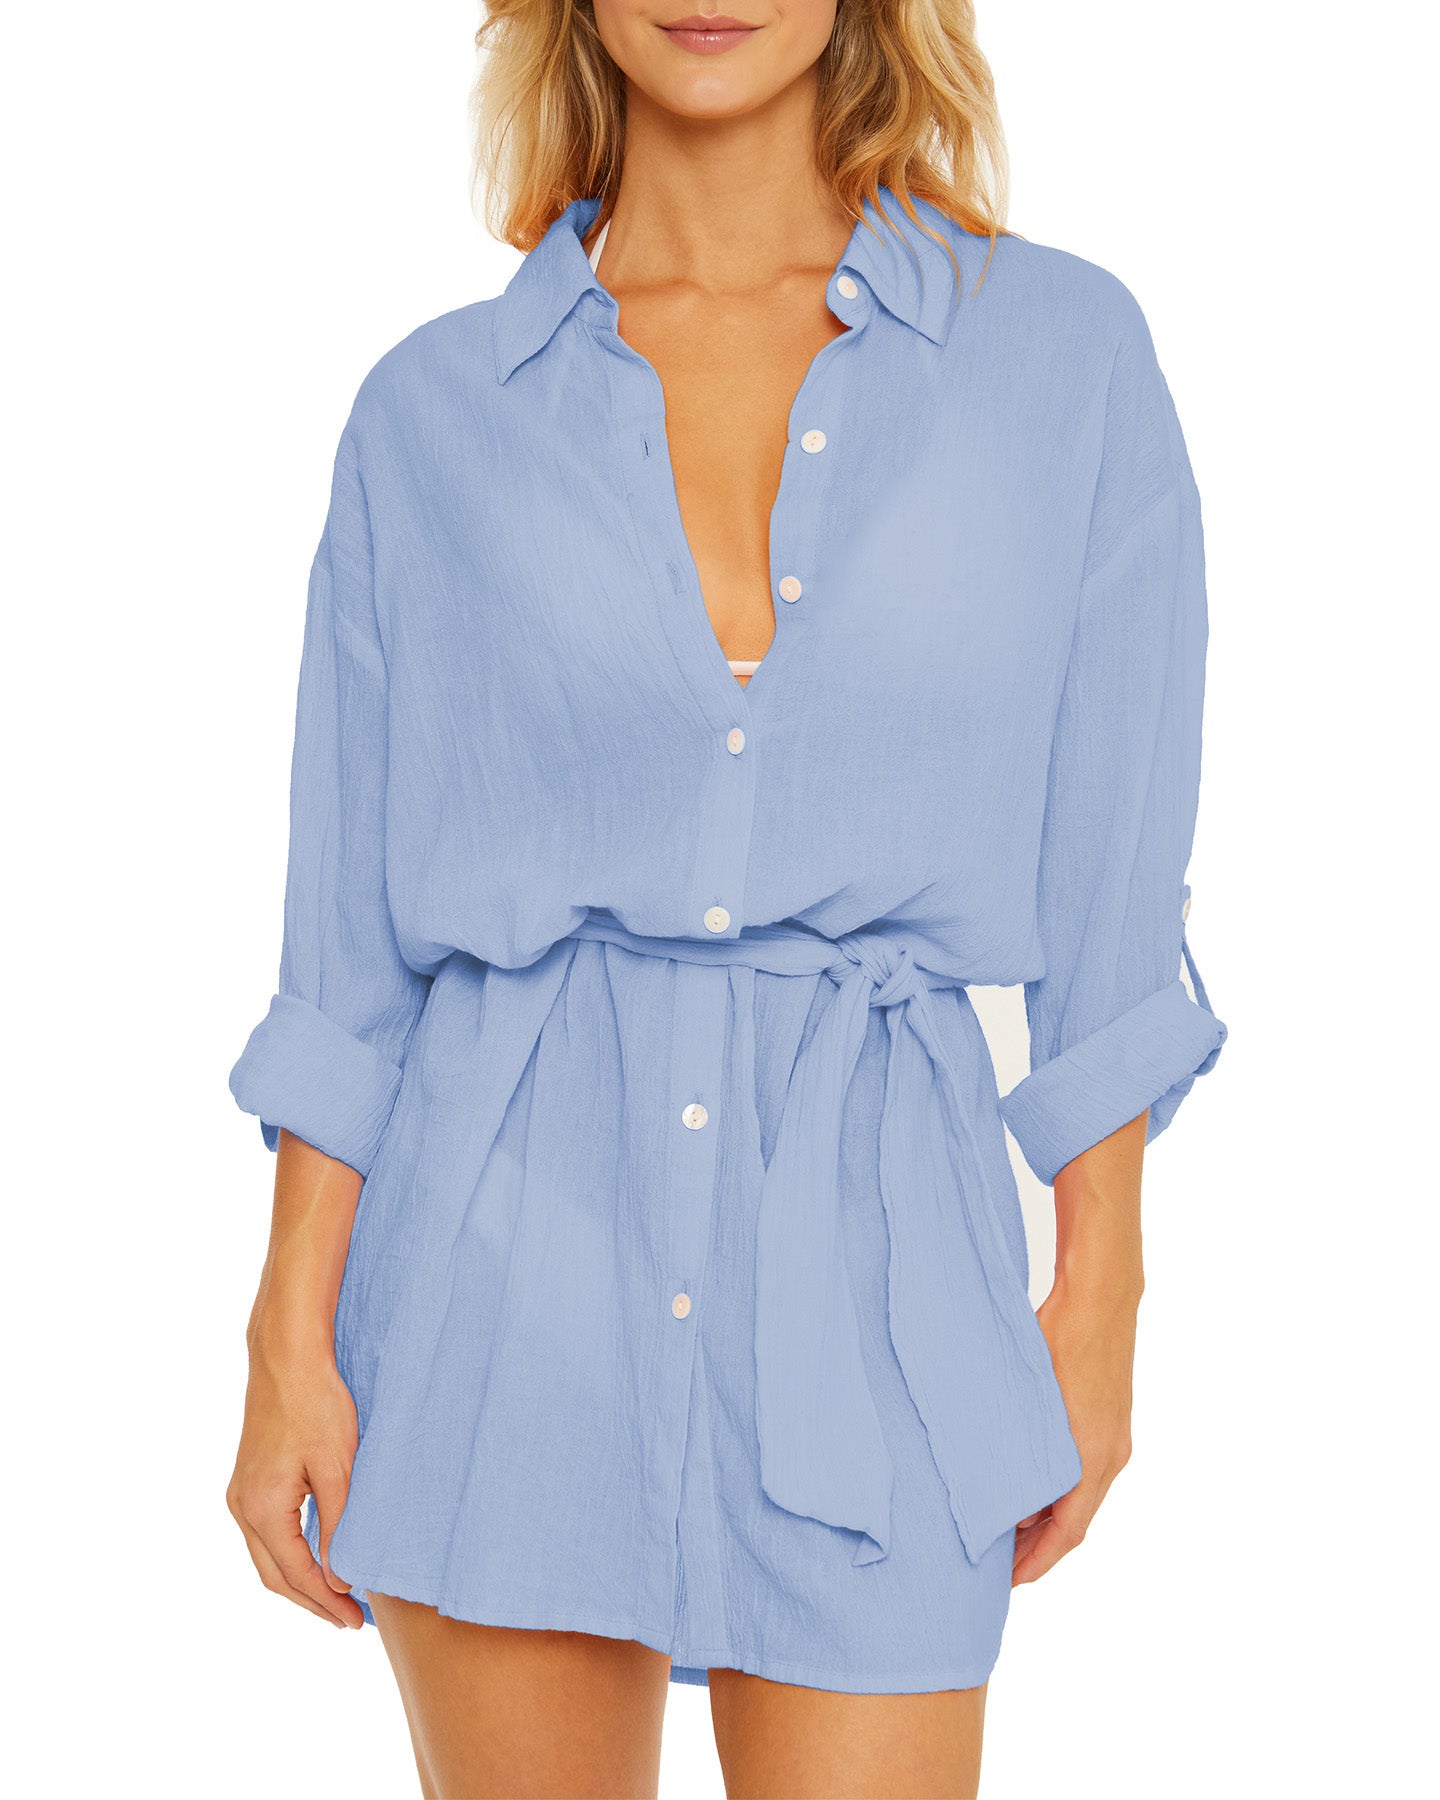 Model wearing a gauzy button up shirt dress in light blue